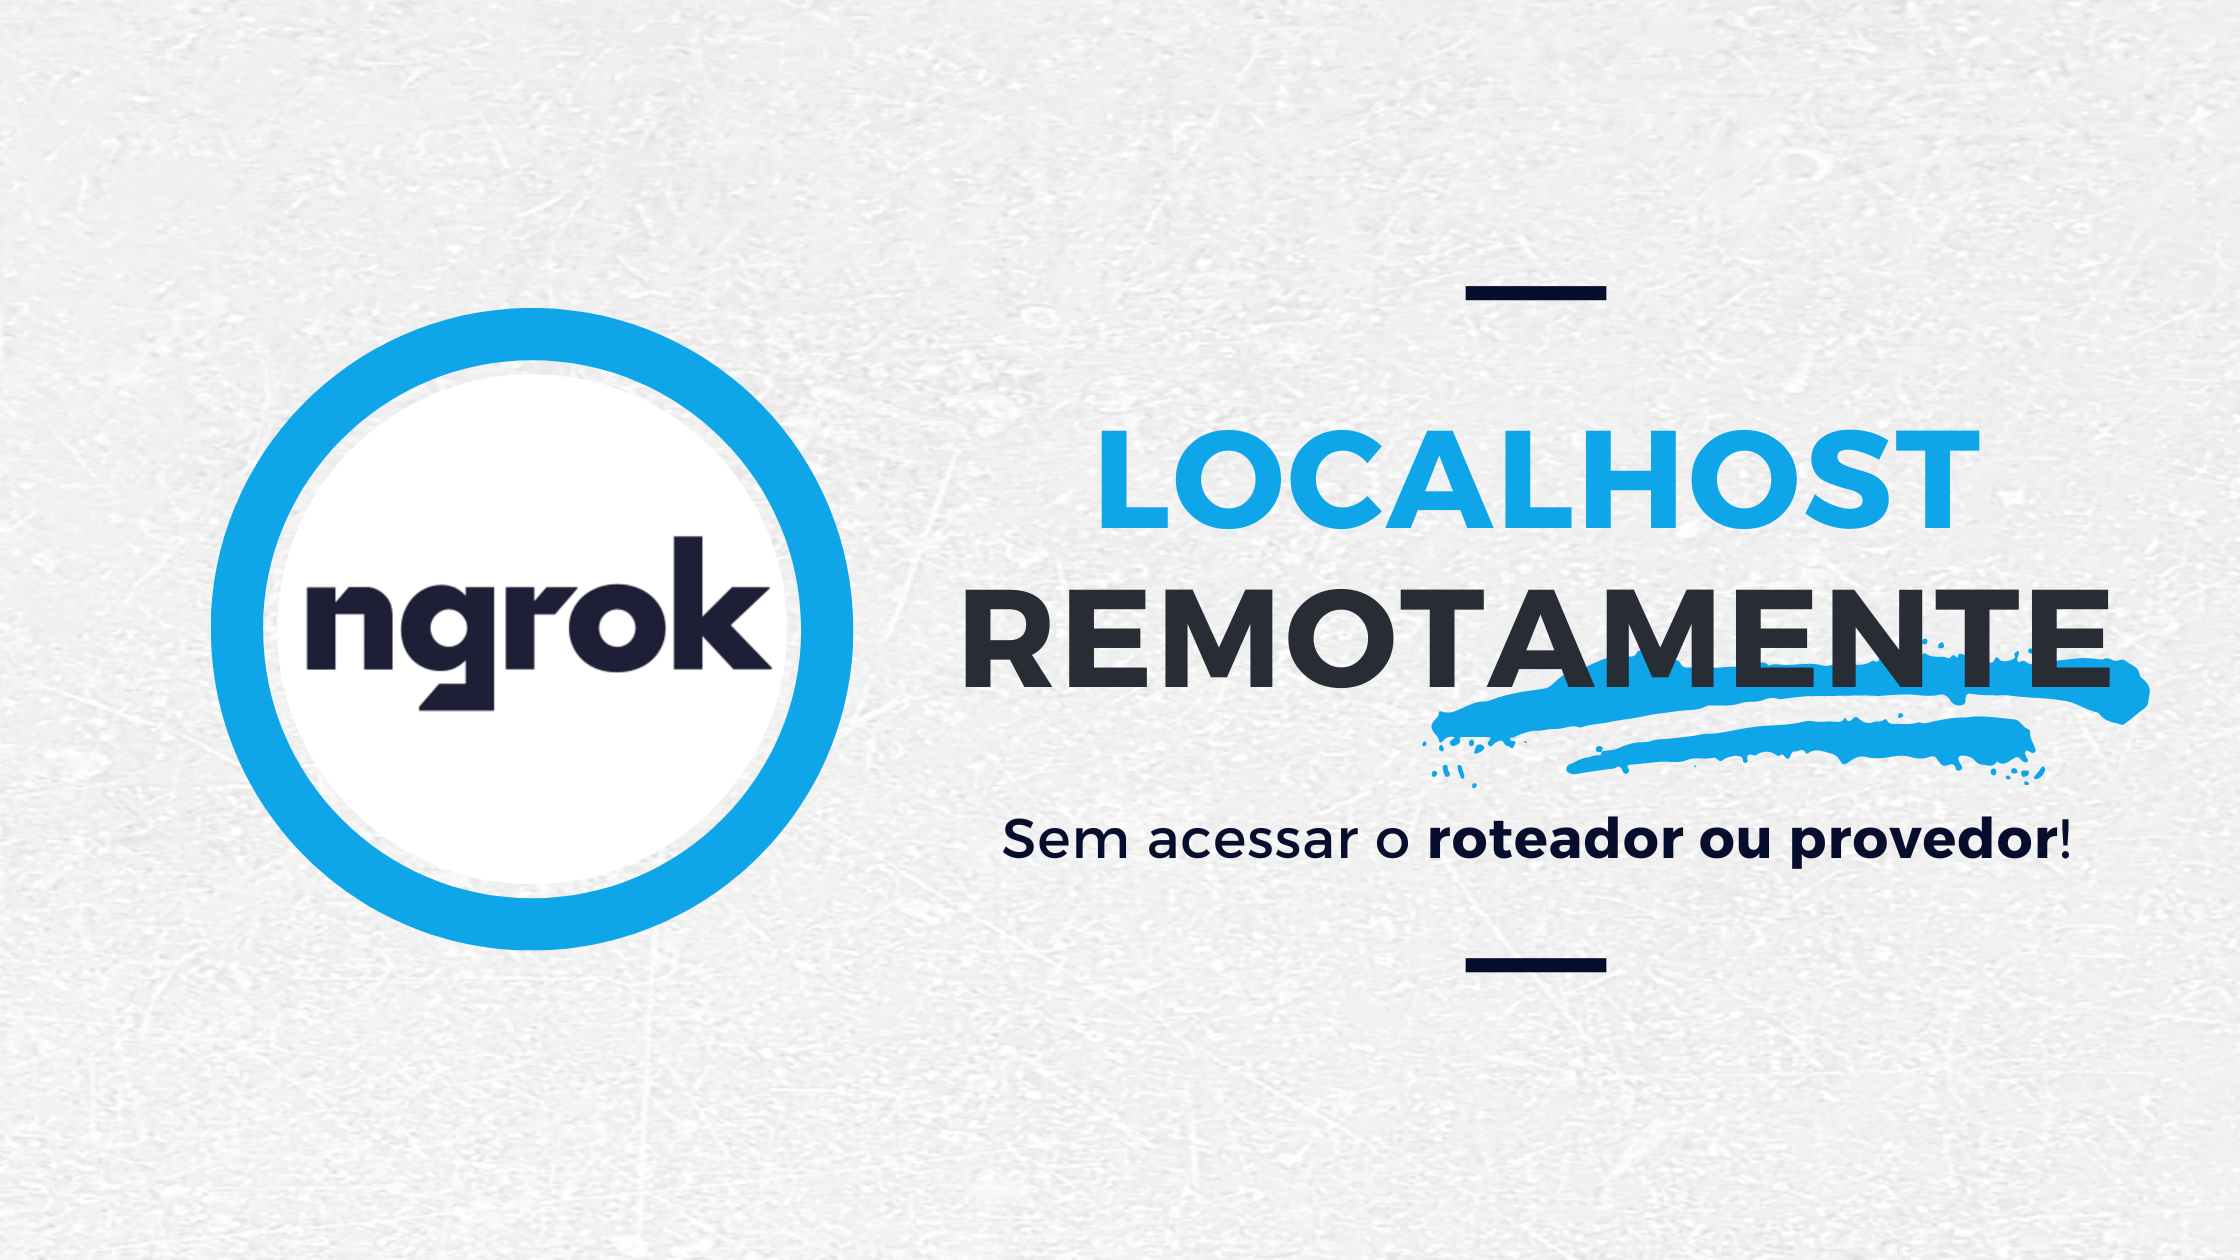 Cover Image for Como acessar localhost remotamente com ngrok